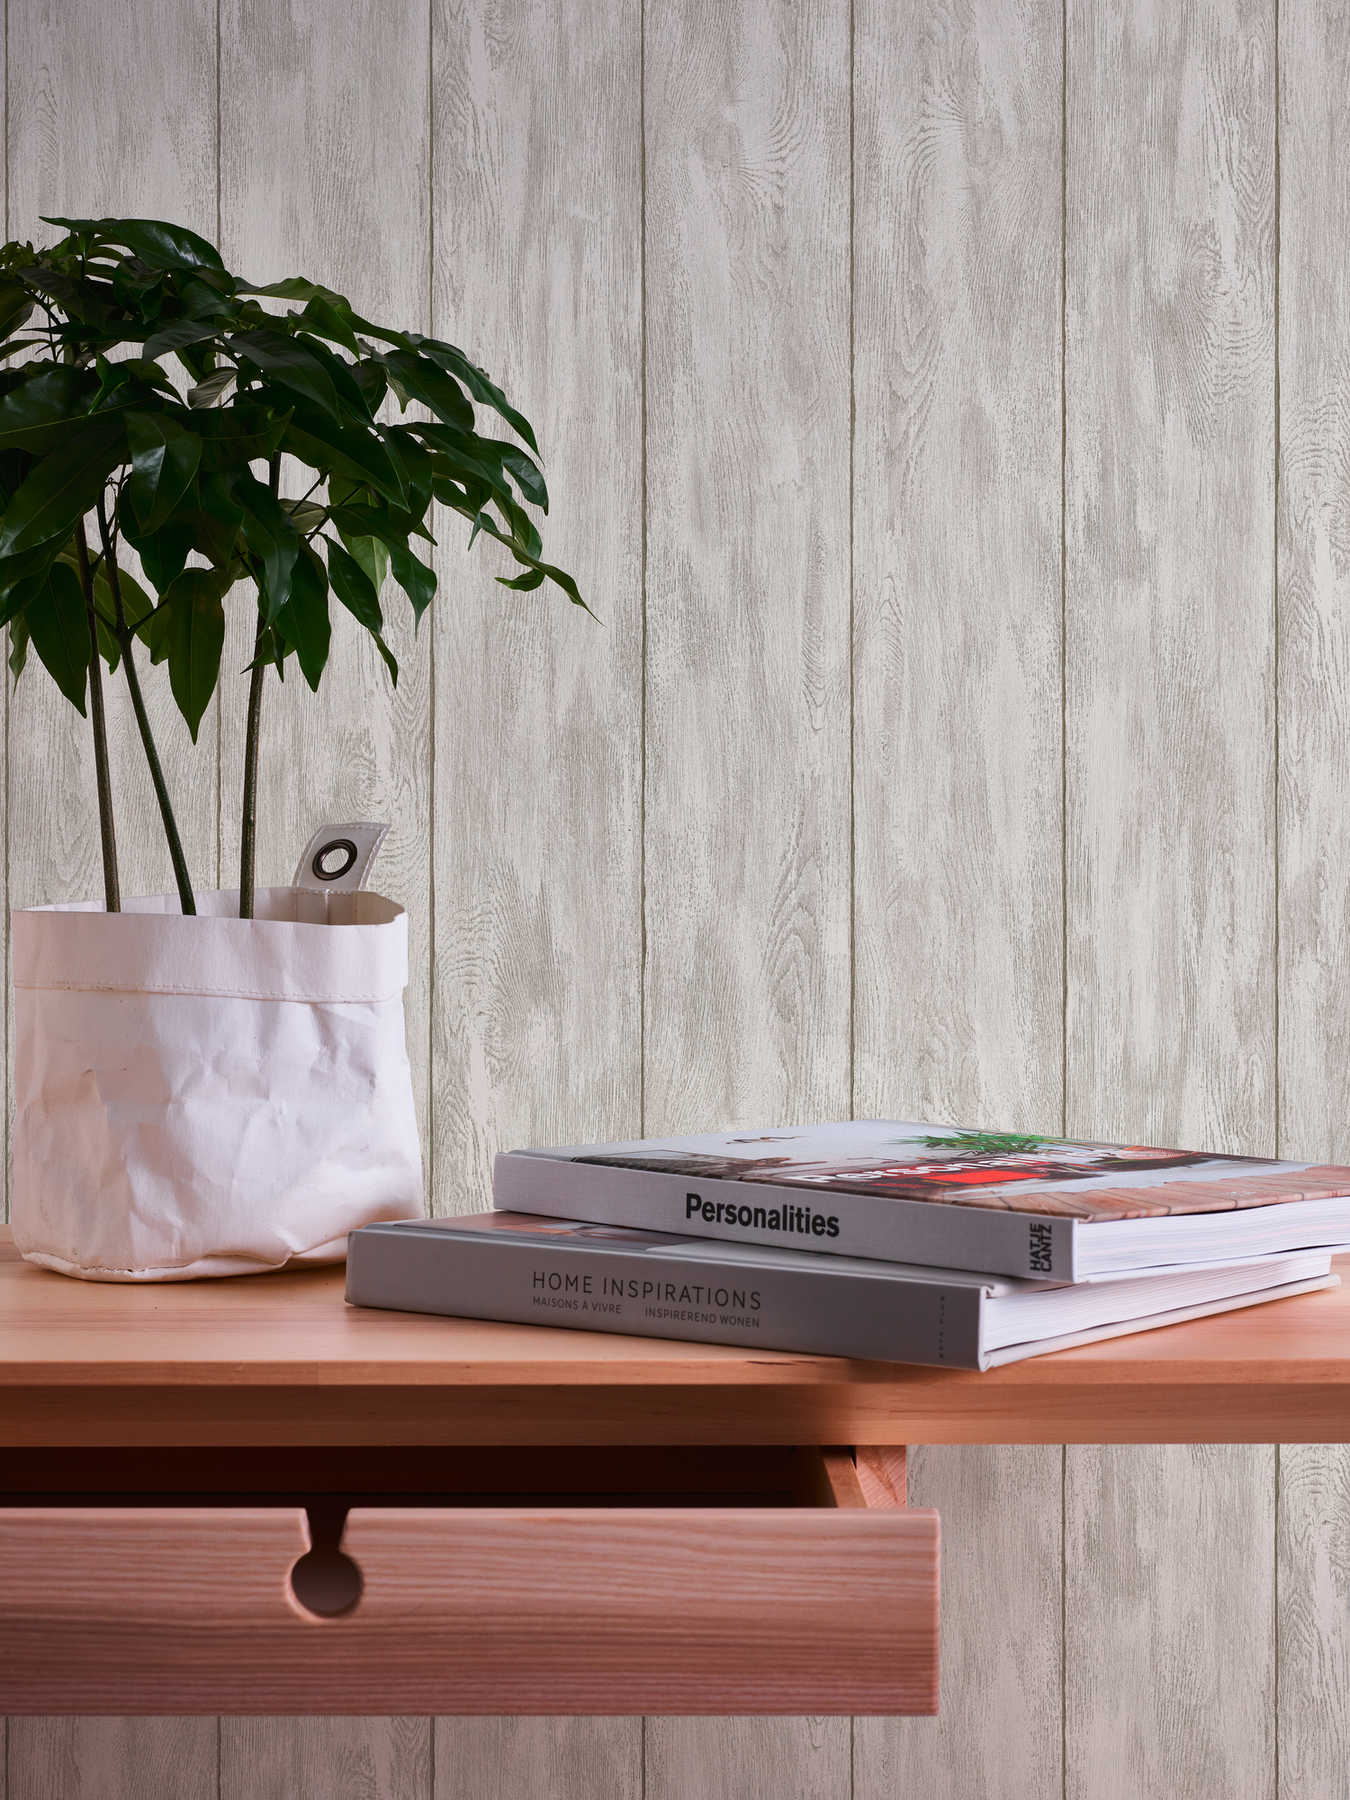             Papier peint imitation bois pour une sensation de maison de campagne confortable - beige, crème, gris
        